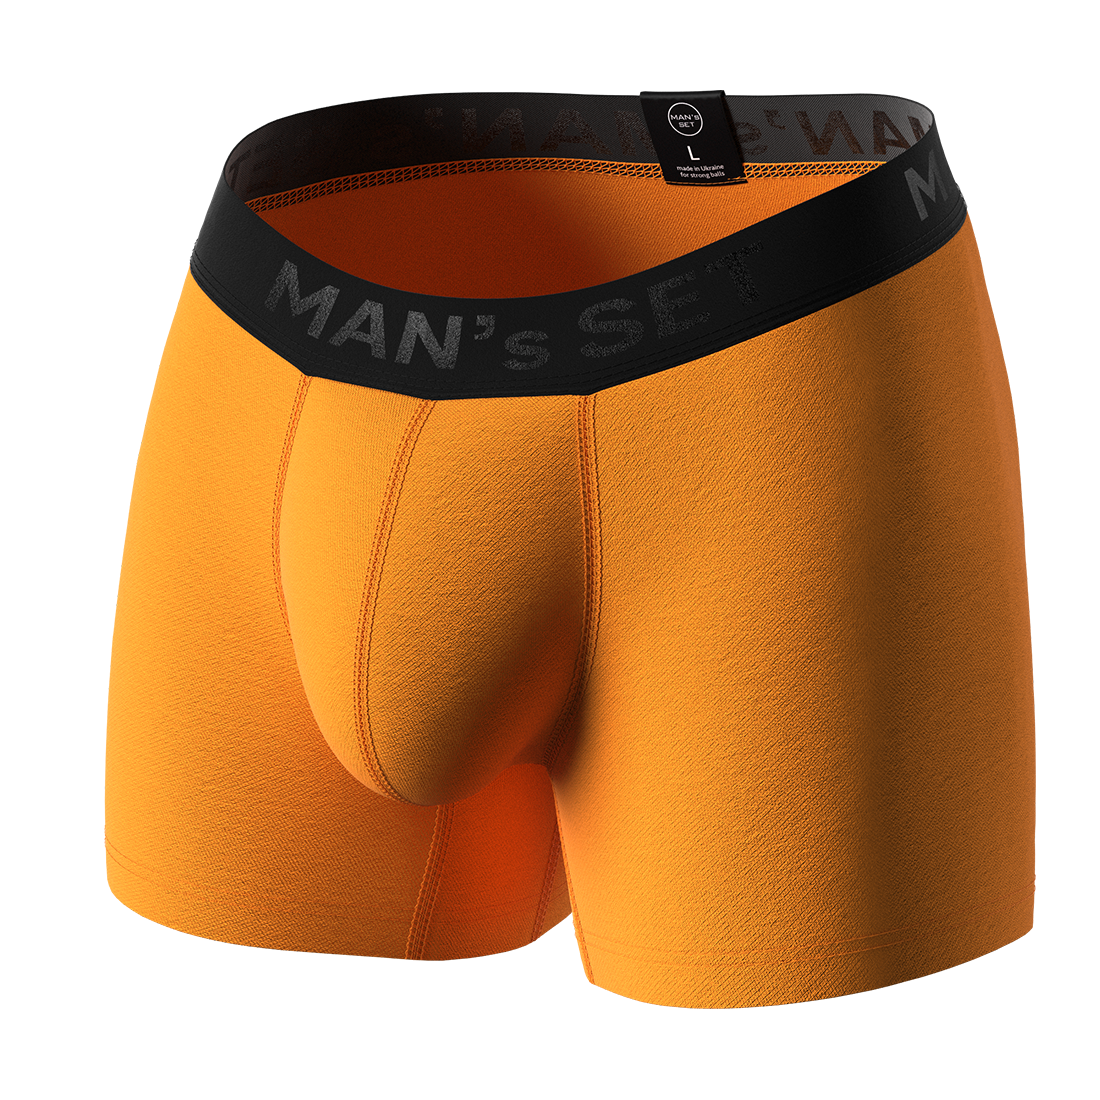 Мужские анатомические боксеры, Intimate Black Series, оранжевый MansSet - Фото 1